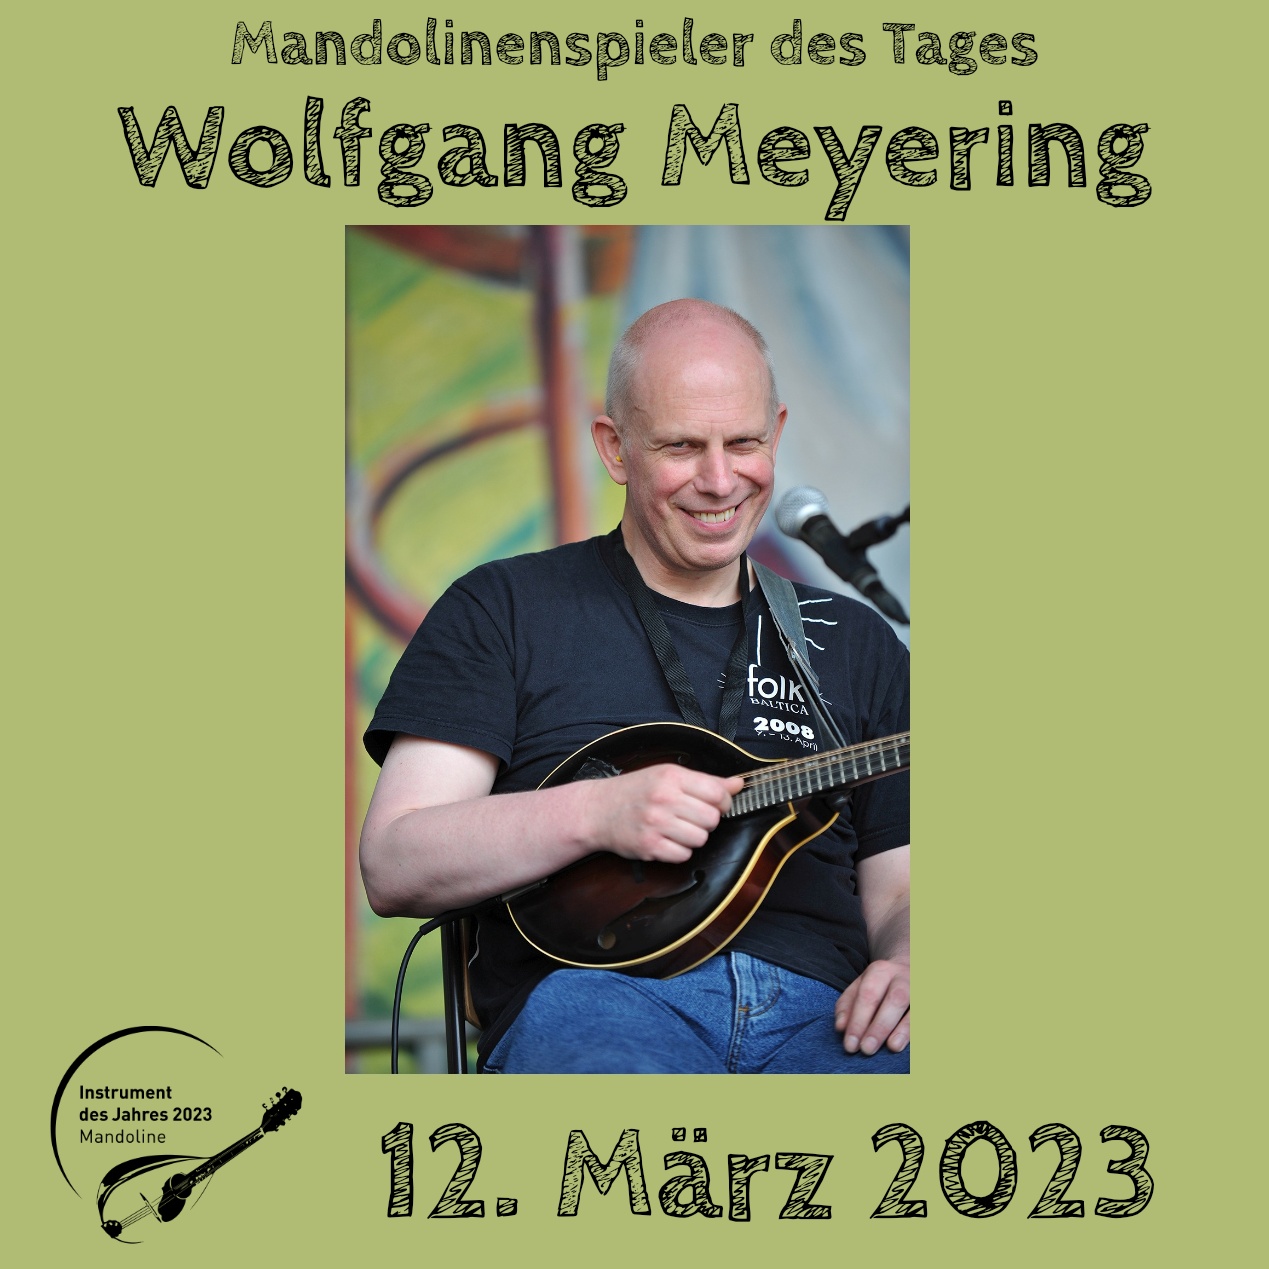 Wolfgang Meyering Mandoline Instrument des Jahres 2023 Mandolinenspieler des Tages